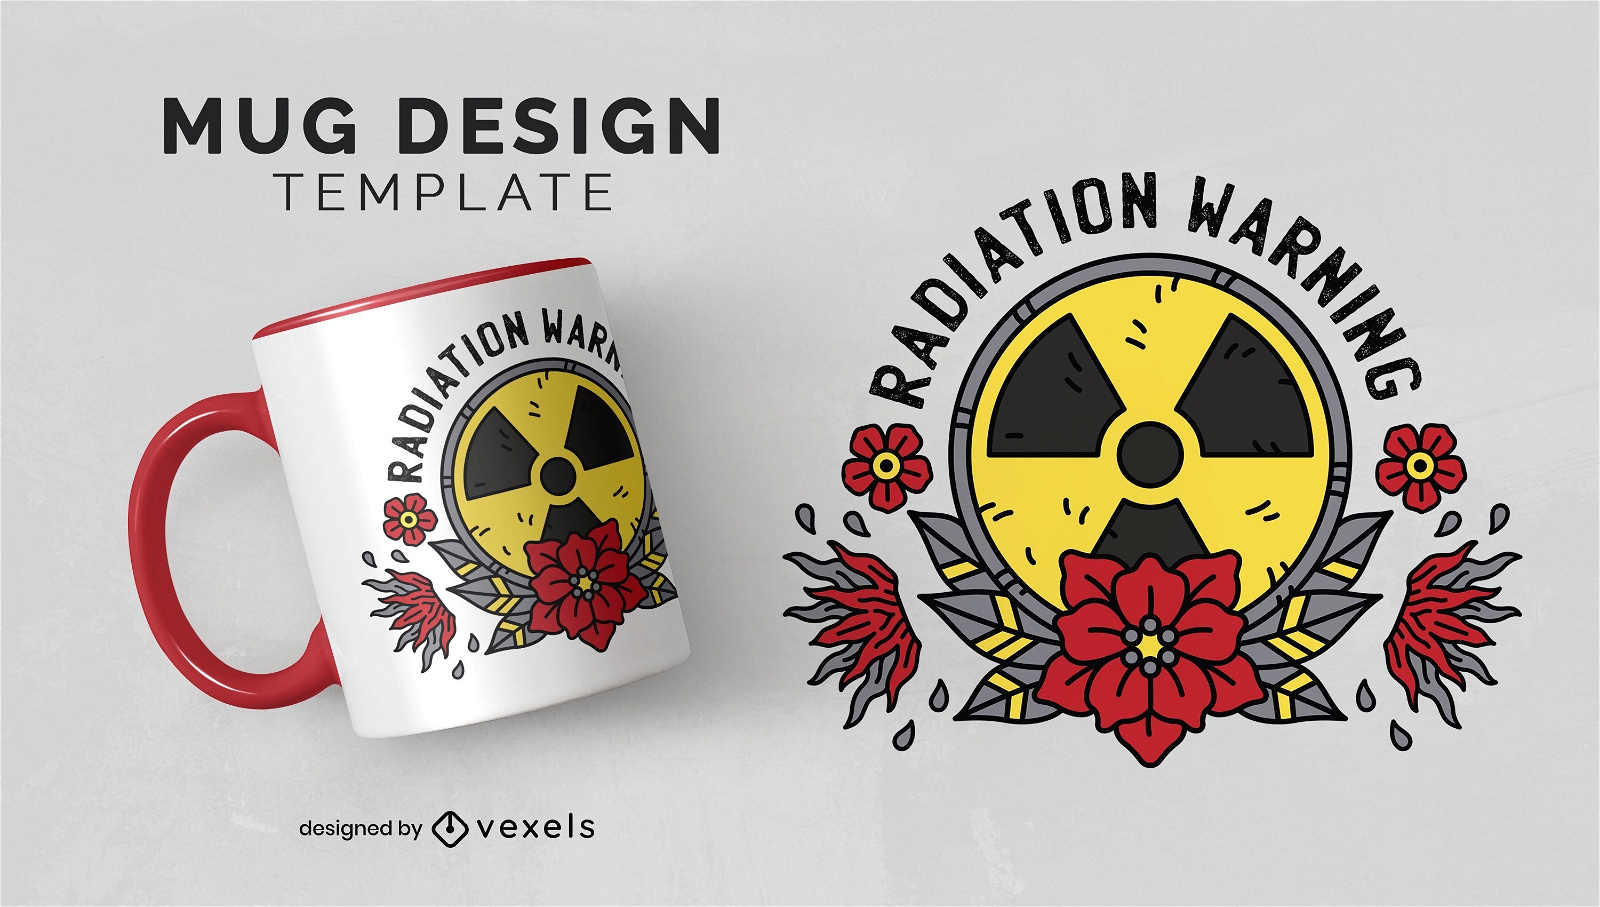 Radiation warning mug design